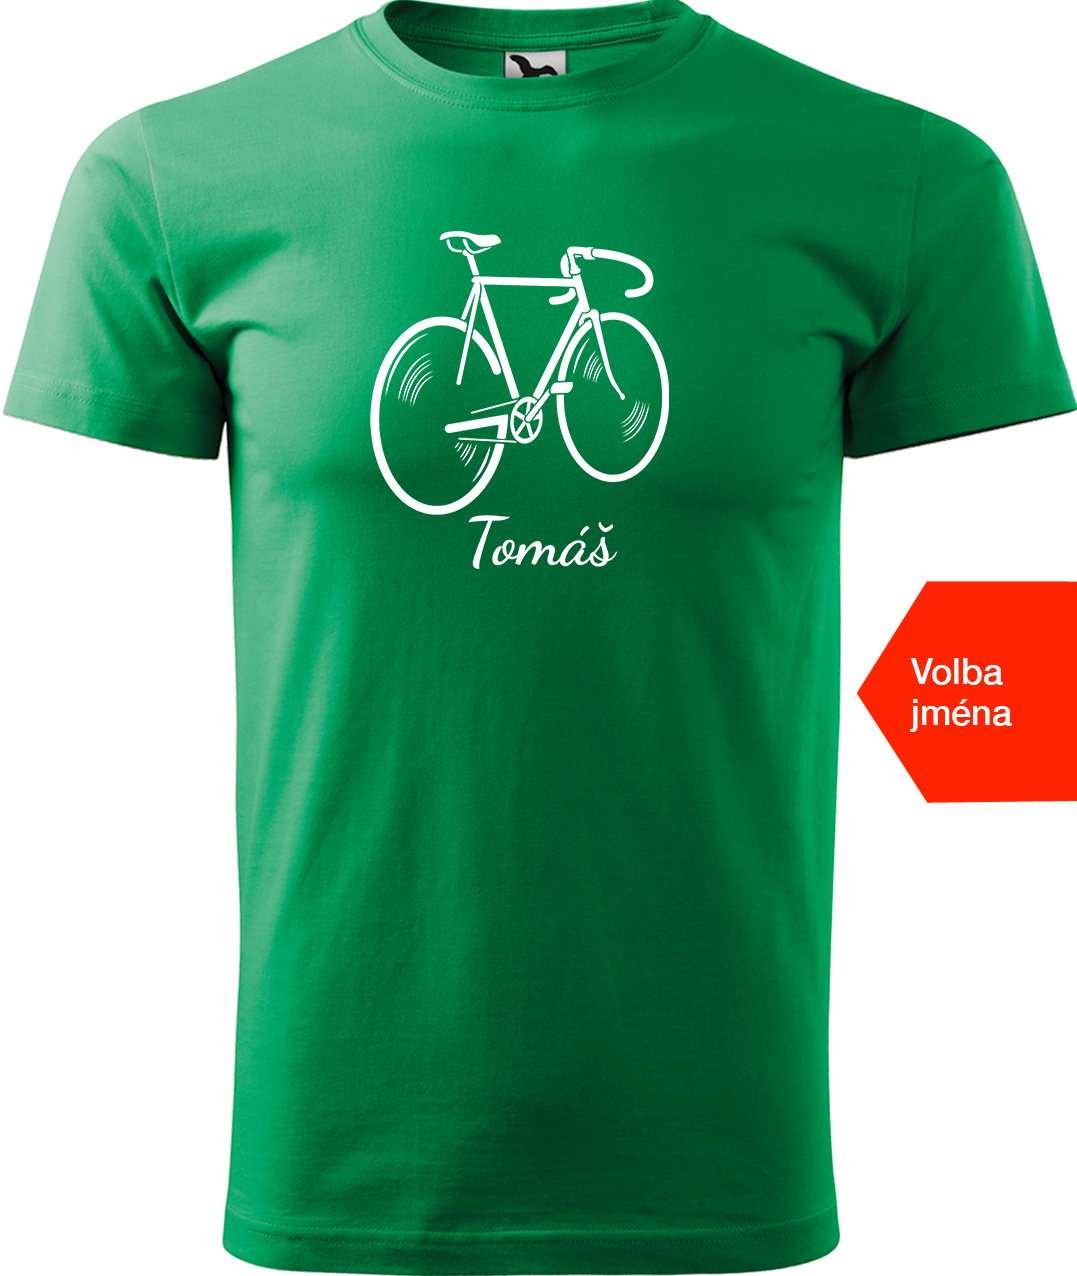 Pánské tričko s kolem a jménem - Pánské kolo Velikost: XL, Barva: Středně zelená (16)